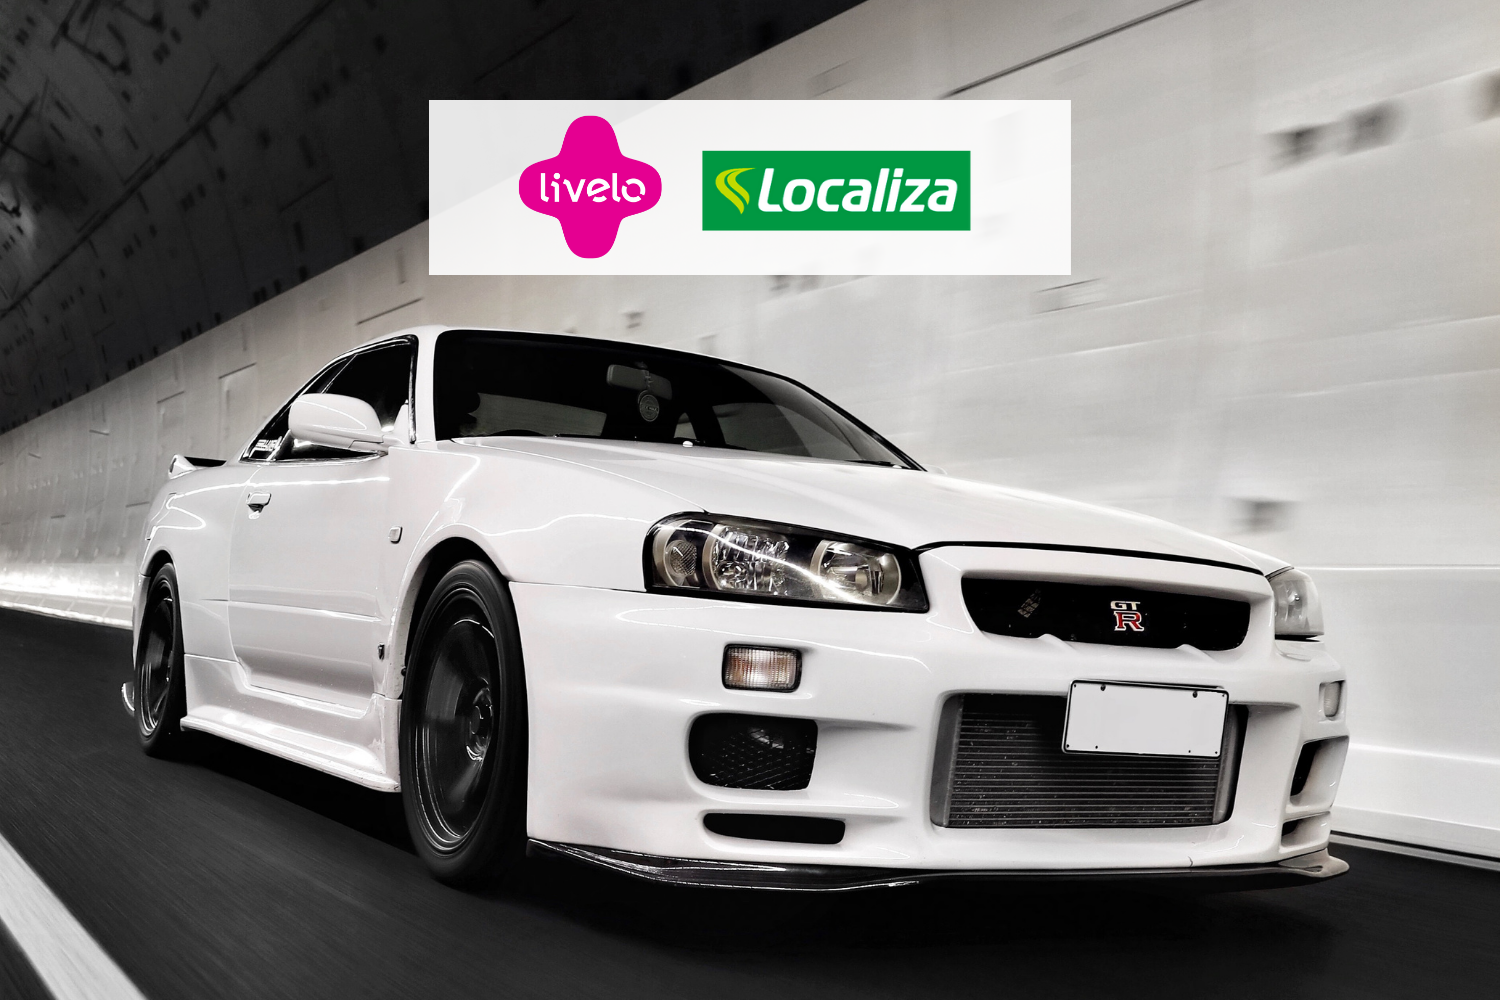 carro brando com logo Livelo Localiza